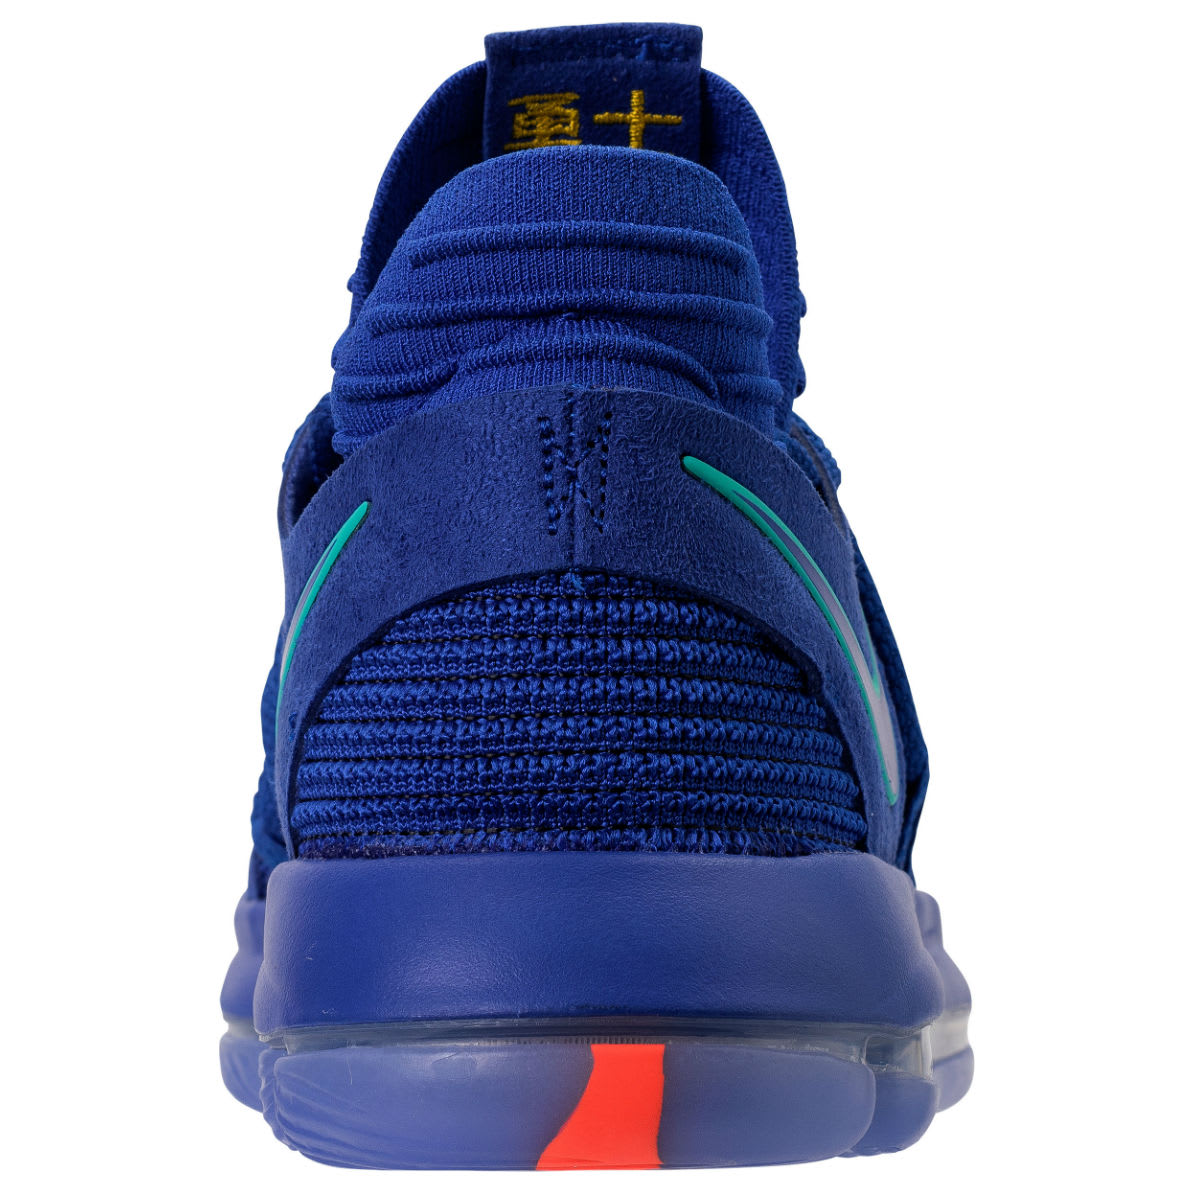 Nike KD 10 City Edition Release Date 897815-402 Heel